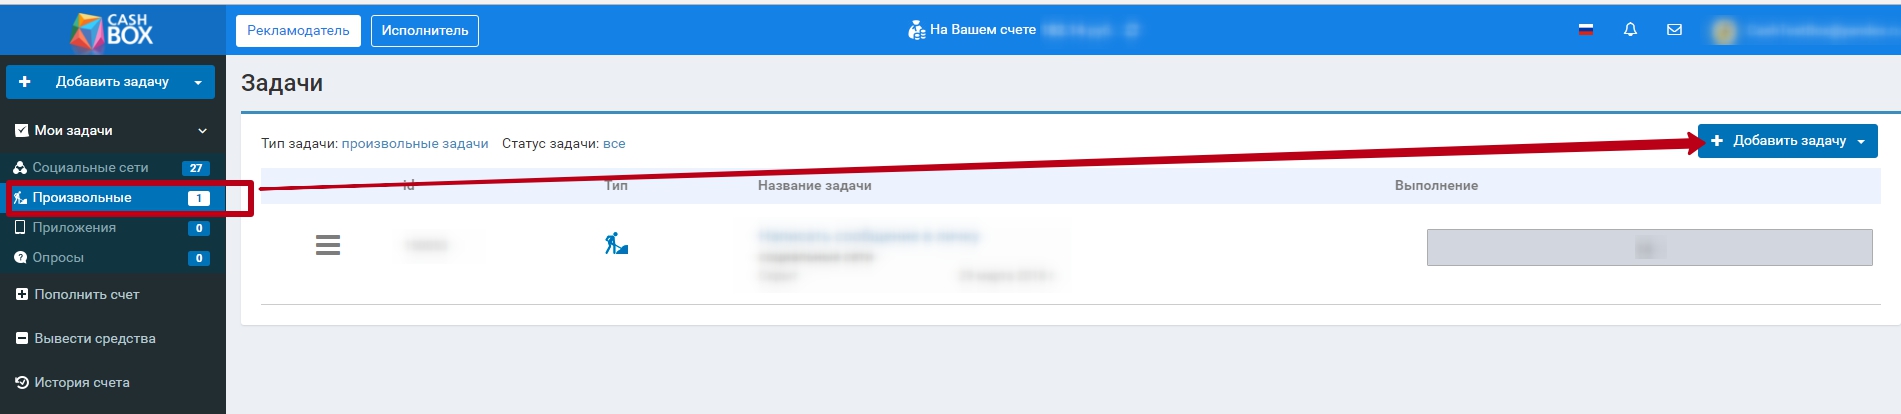 Накрутка смс ВКонтакте самостоятельно